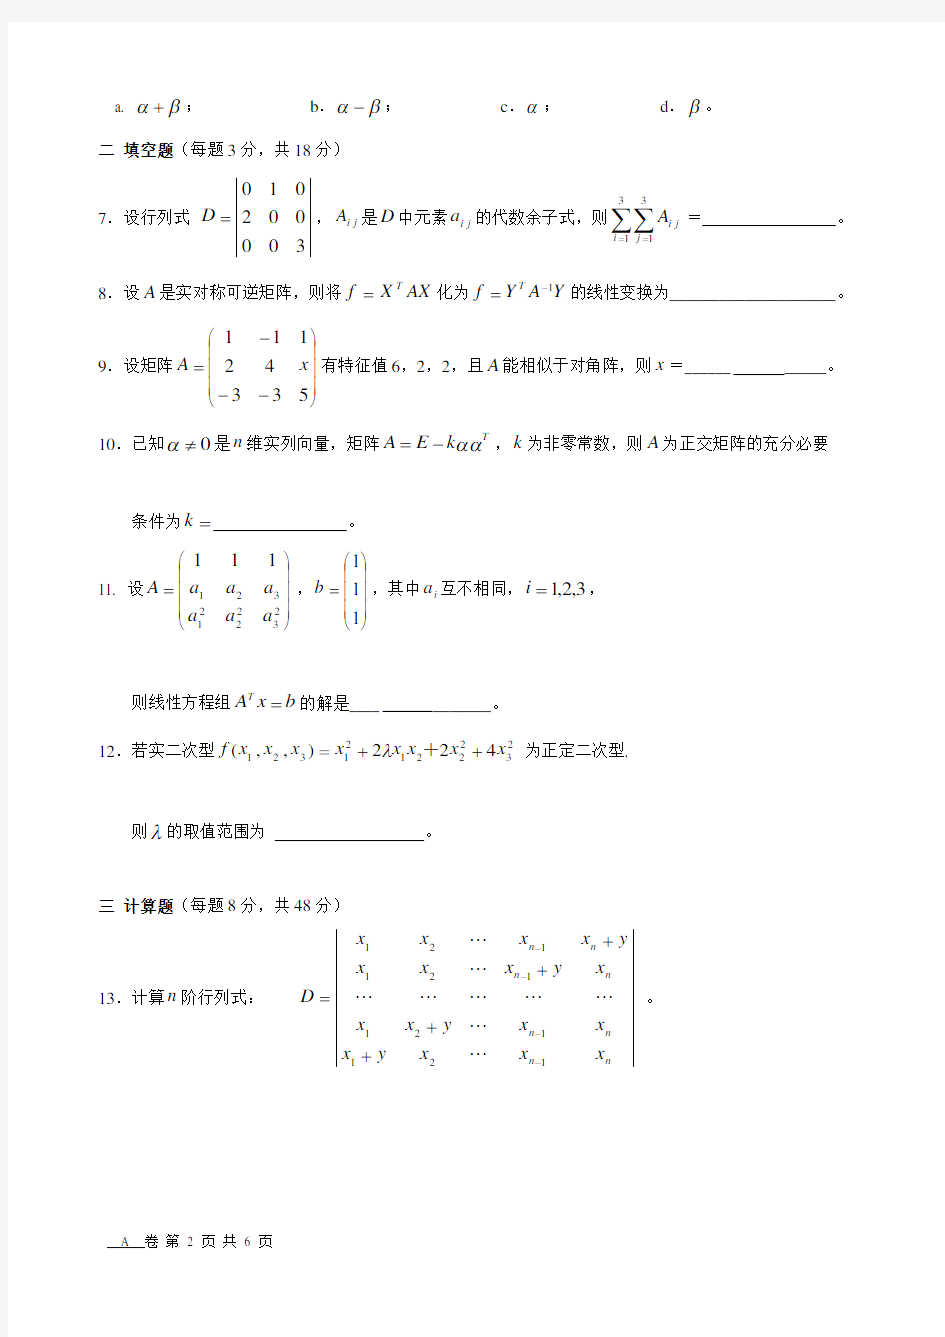 上海交通大学线性代数期末考试题0708-1线代(B)-A卷